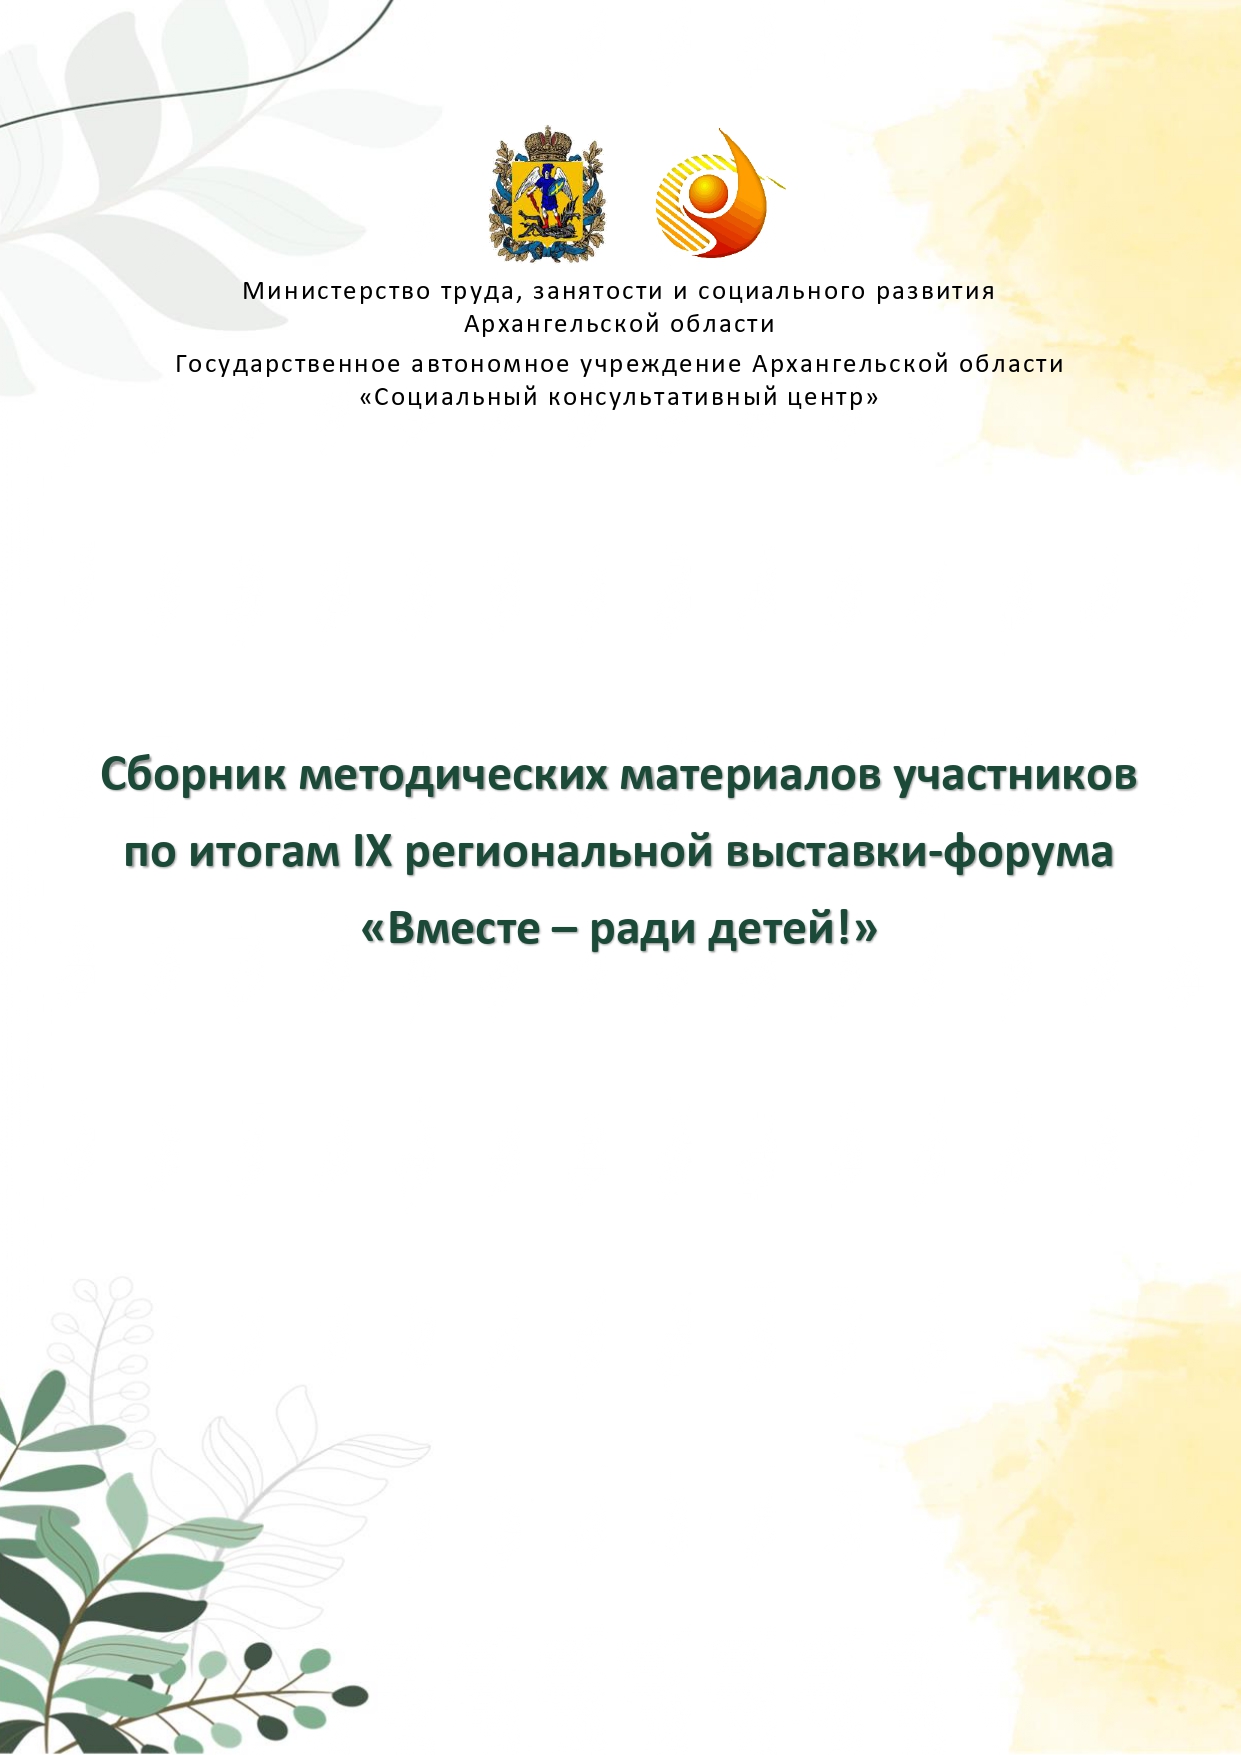 Sbornik_metodicheskikh_materialov_uchastnikov_IX_regionalnoy_vystavki-foruma_Vmeste__radi_detey_33__2023_page-0001